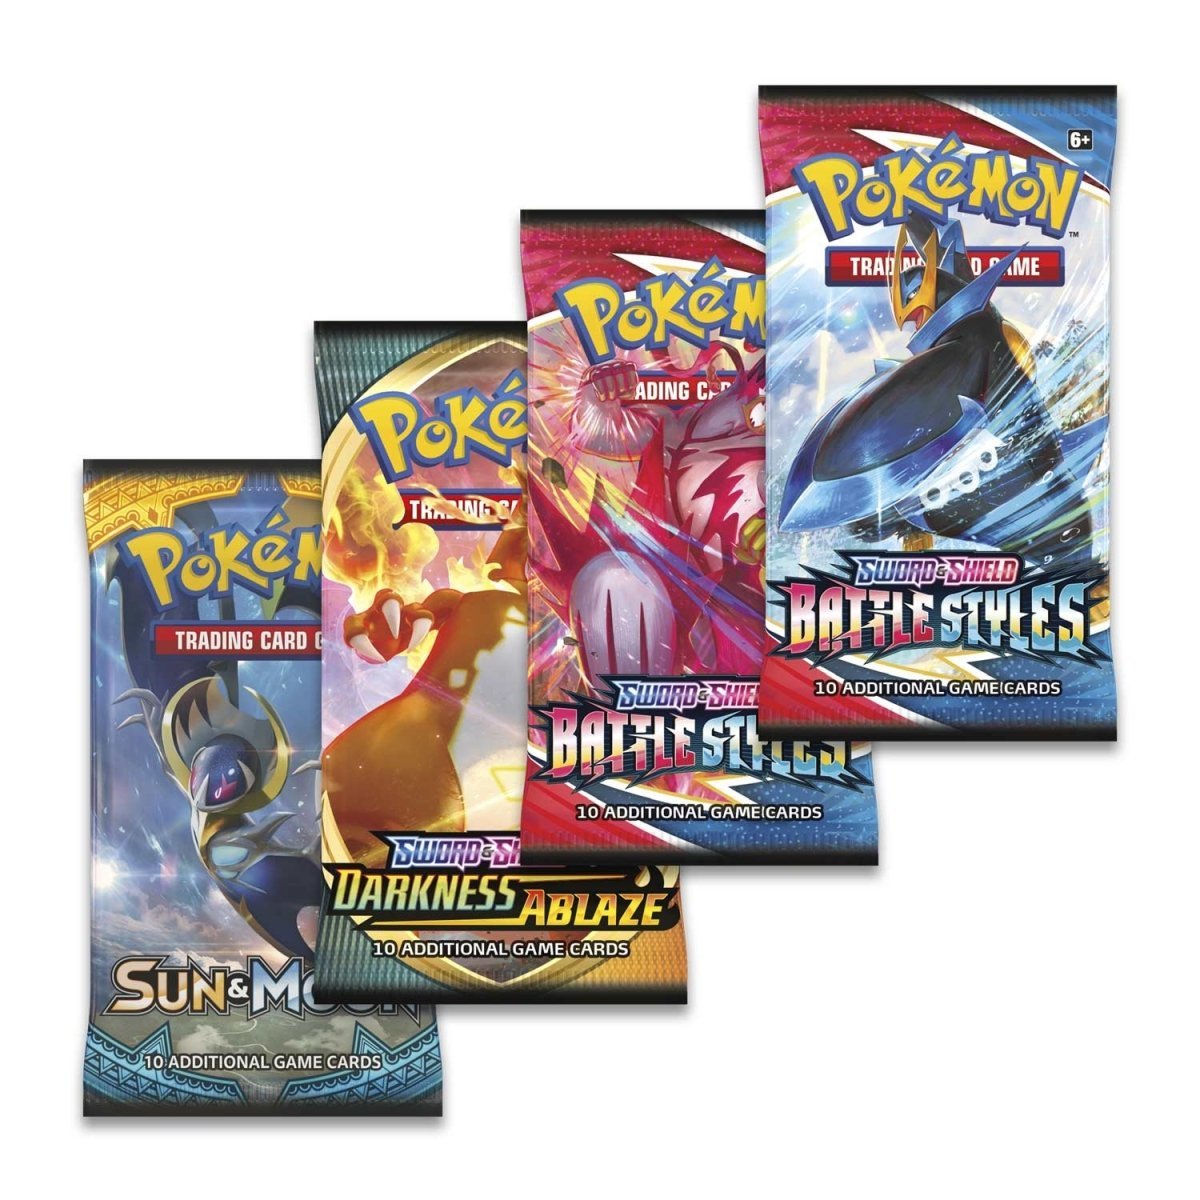 Pokémon TCG: Galarian Rapidash V Collection Box - PokeRvmCollection Box